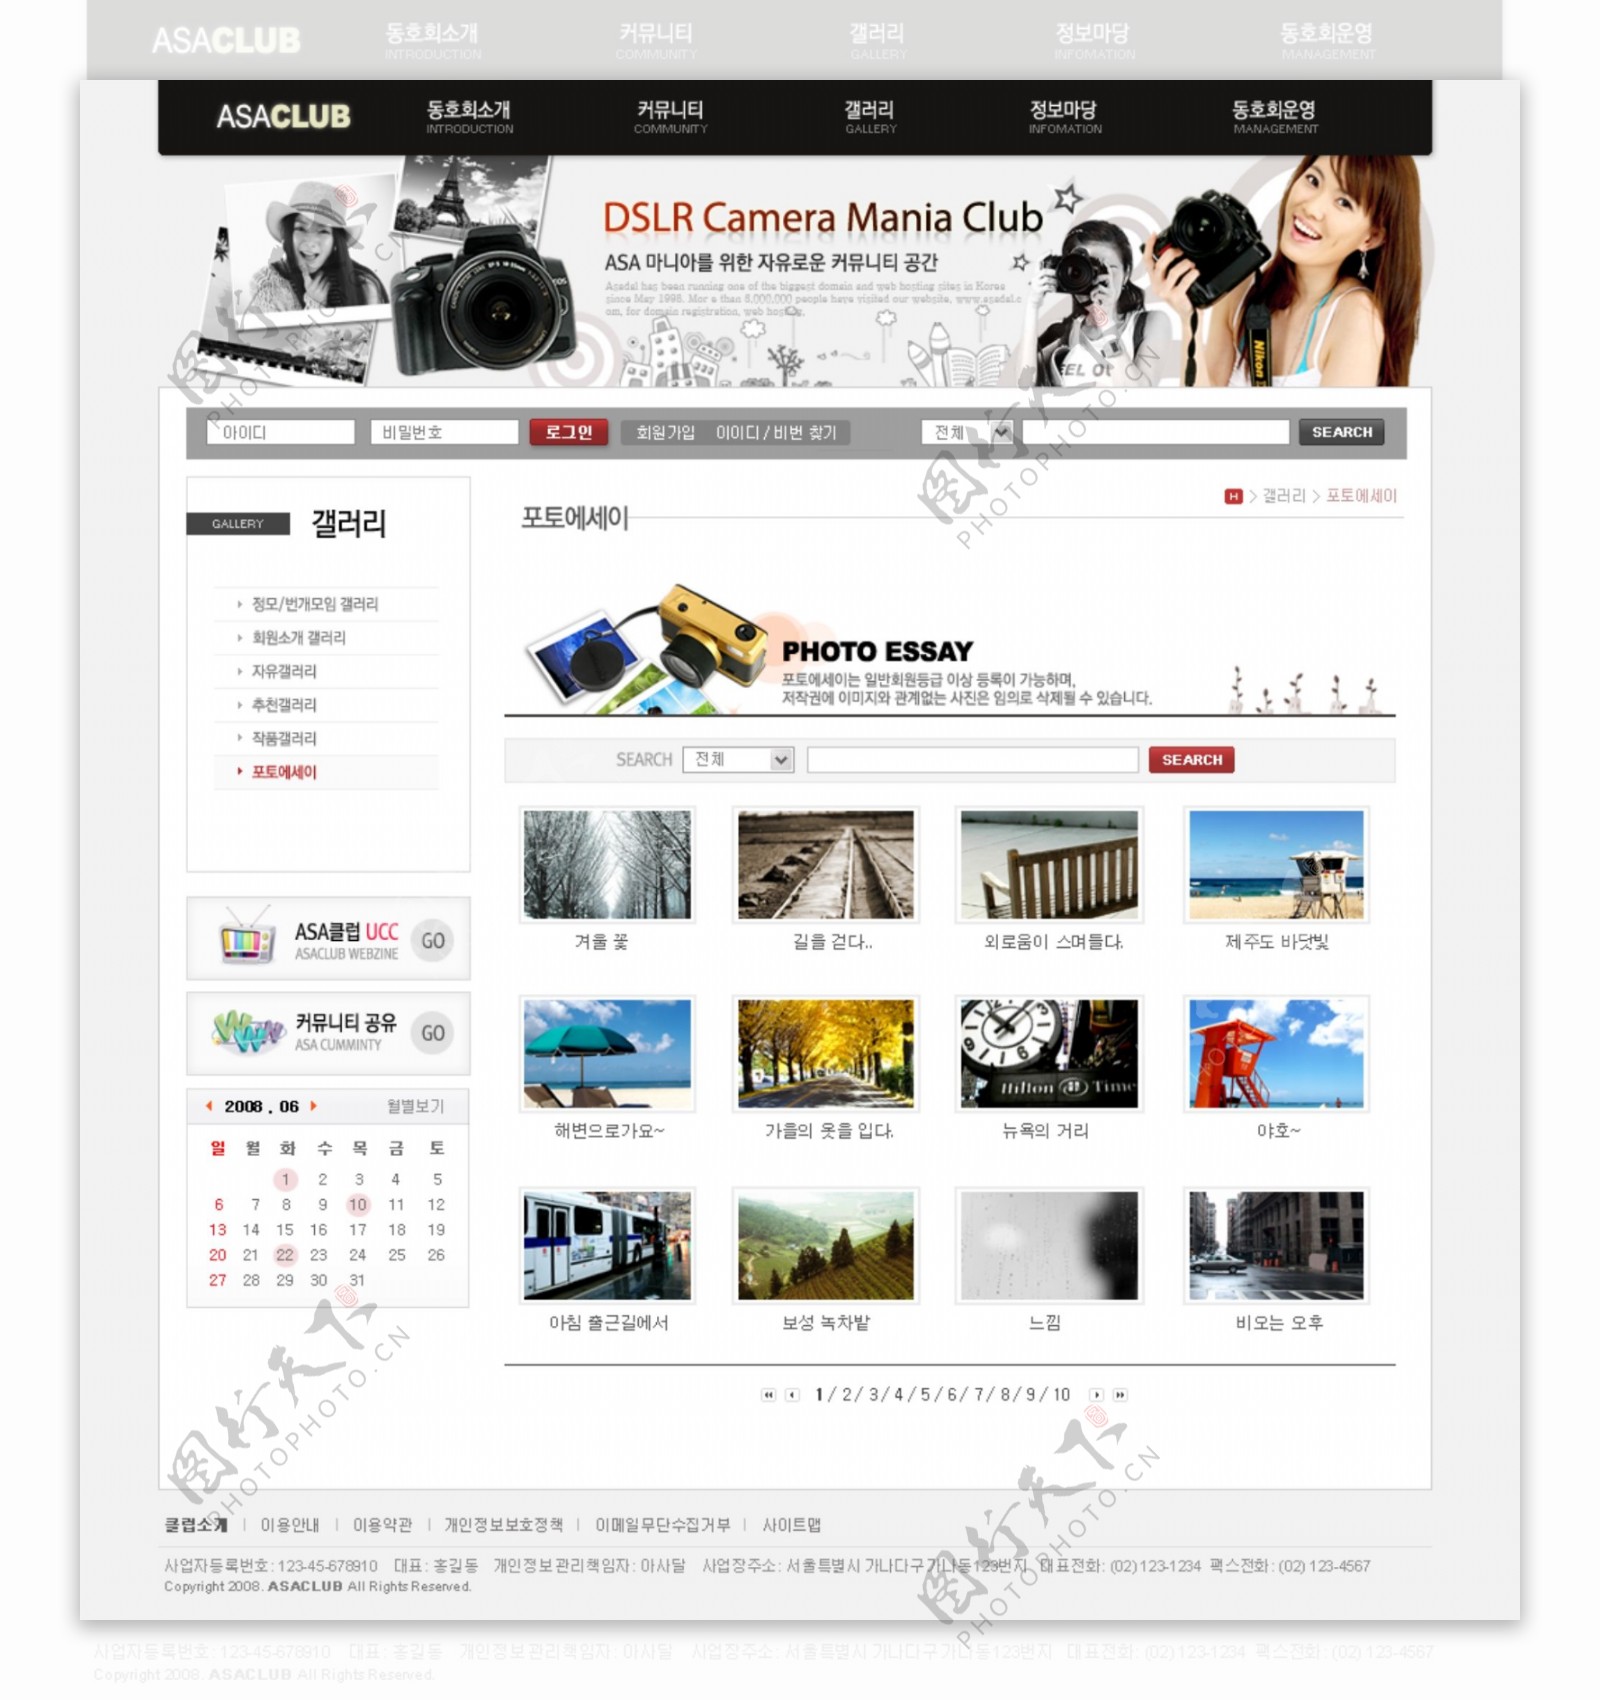 数码相机商业网站模板